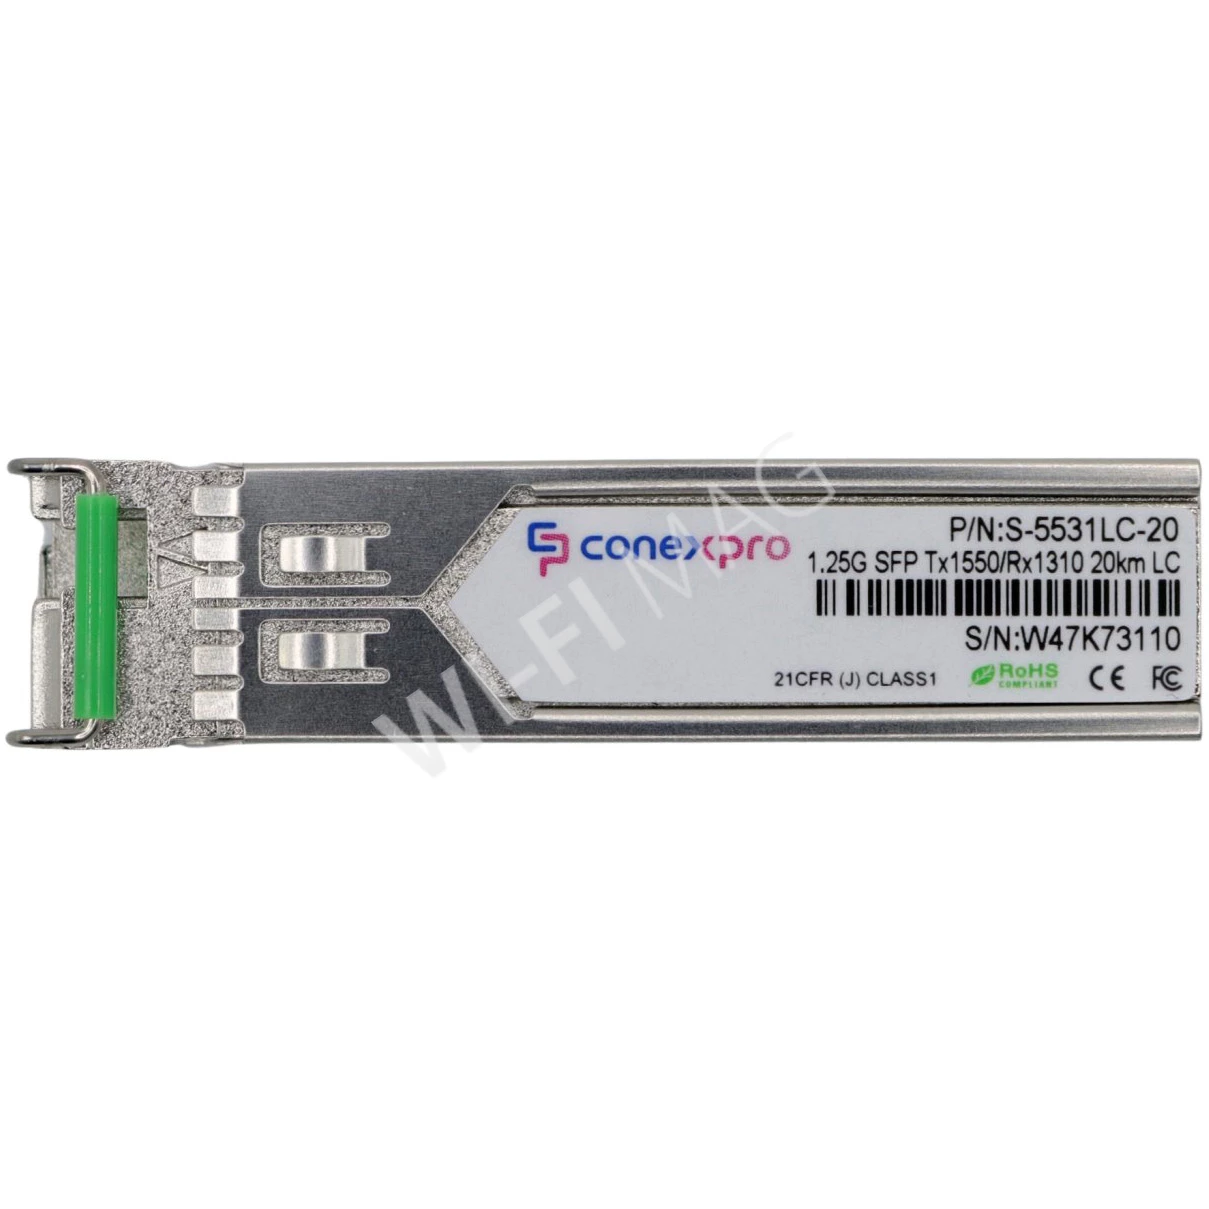 Conexpro S-5531LC-20 модуль SFP Single Mode, 1.25 Гбит/с, LC, WDM/BiDi, 20 км (Tx=1550/Rx=1310)